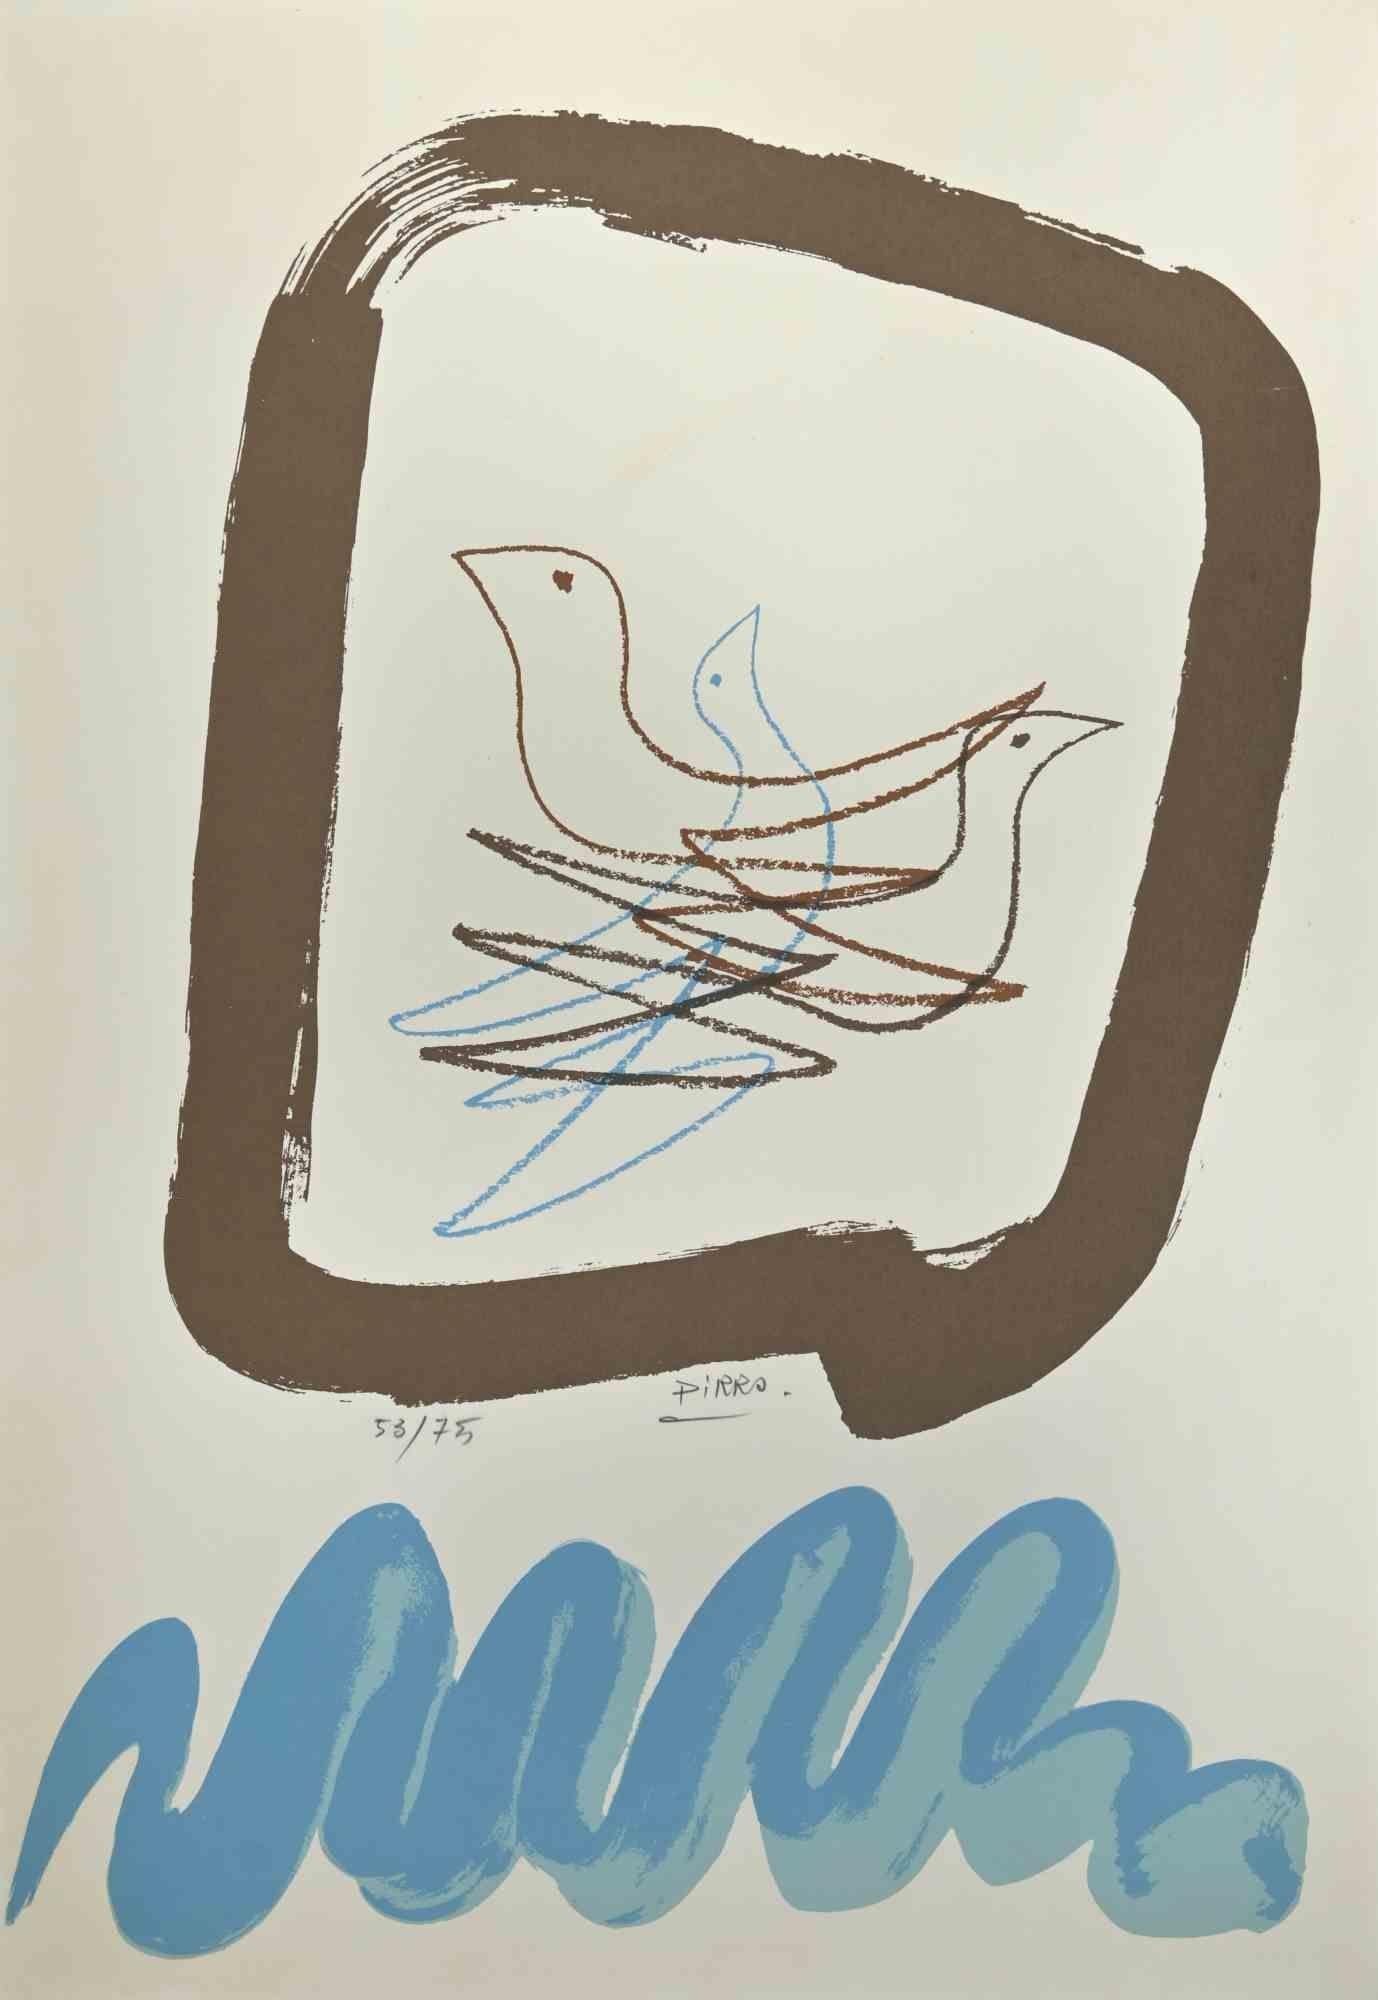 Birds ist eine Lithographie von Marcello Pirro.  

Handsignierte, nummerierte Auflage von 53/75 Drucken.

Der Erhaltungszustand ist sehr gut.

Das Kunstwerk stellt eine brillante Komposition mit Vögeln Nest in einem bräunlichen Rahmen, unten ein